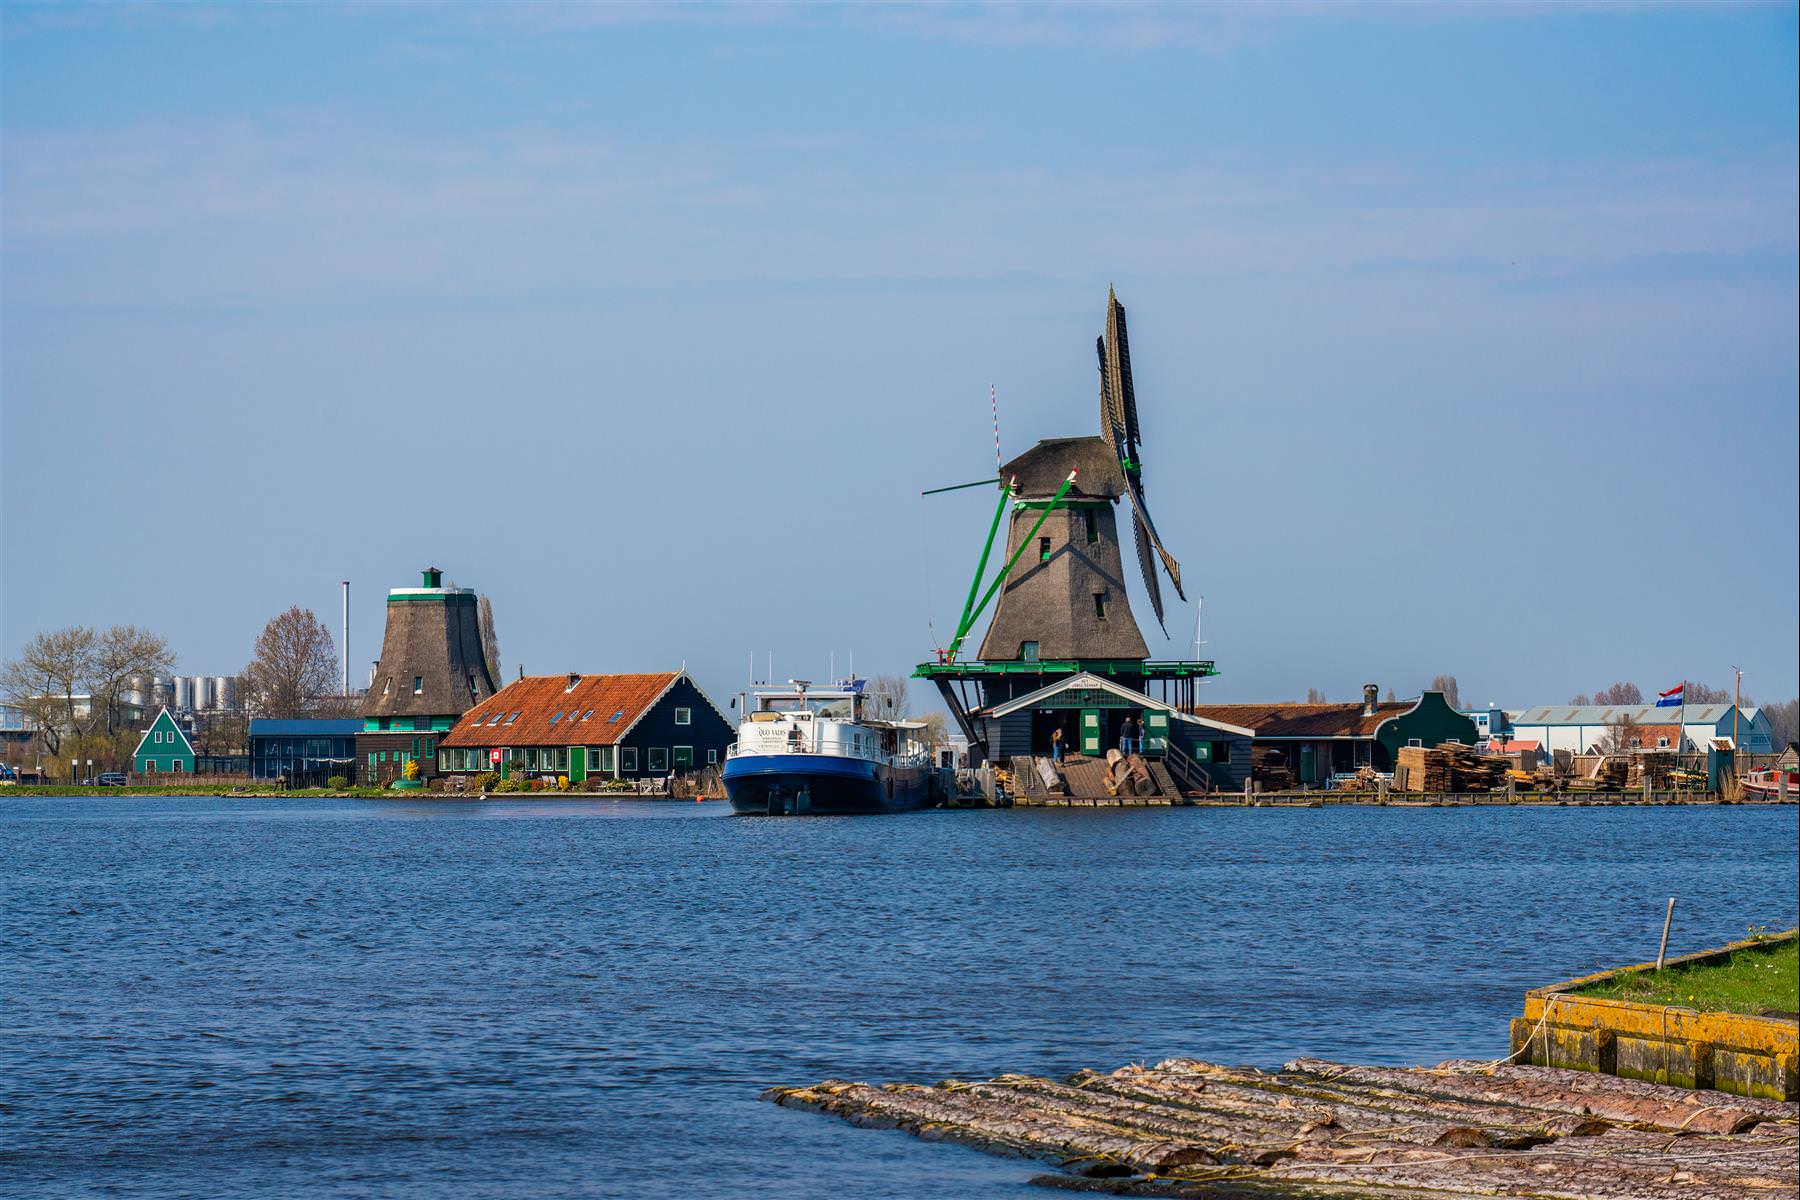 [荷蘭/贊丹] 風車村贊丹 Zaandam，漂亮的風車齊聚在這，有風車村之稱